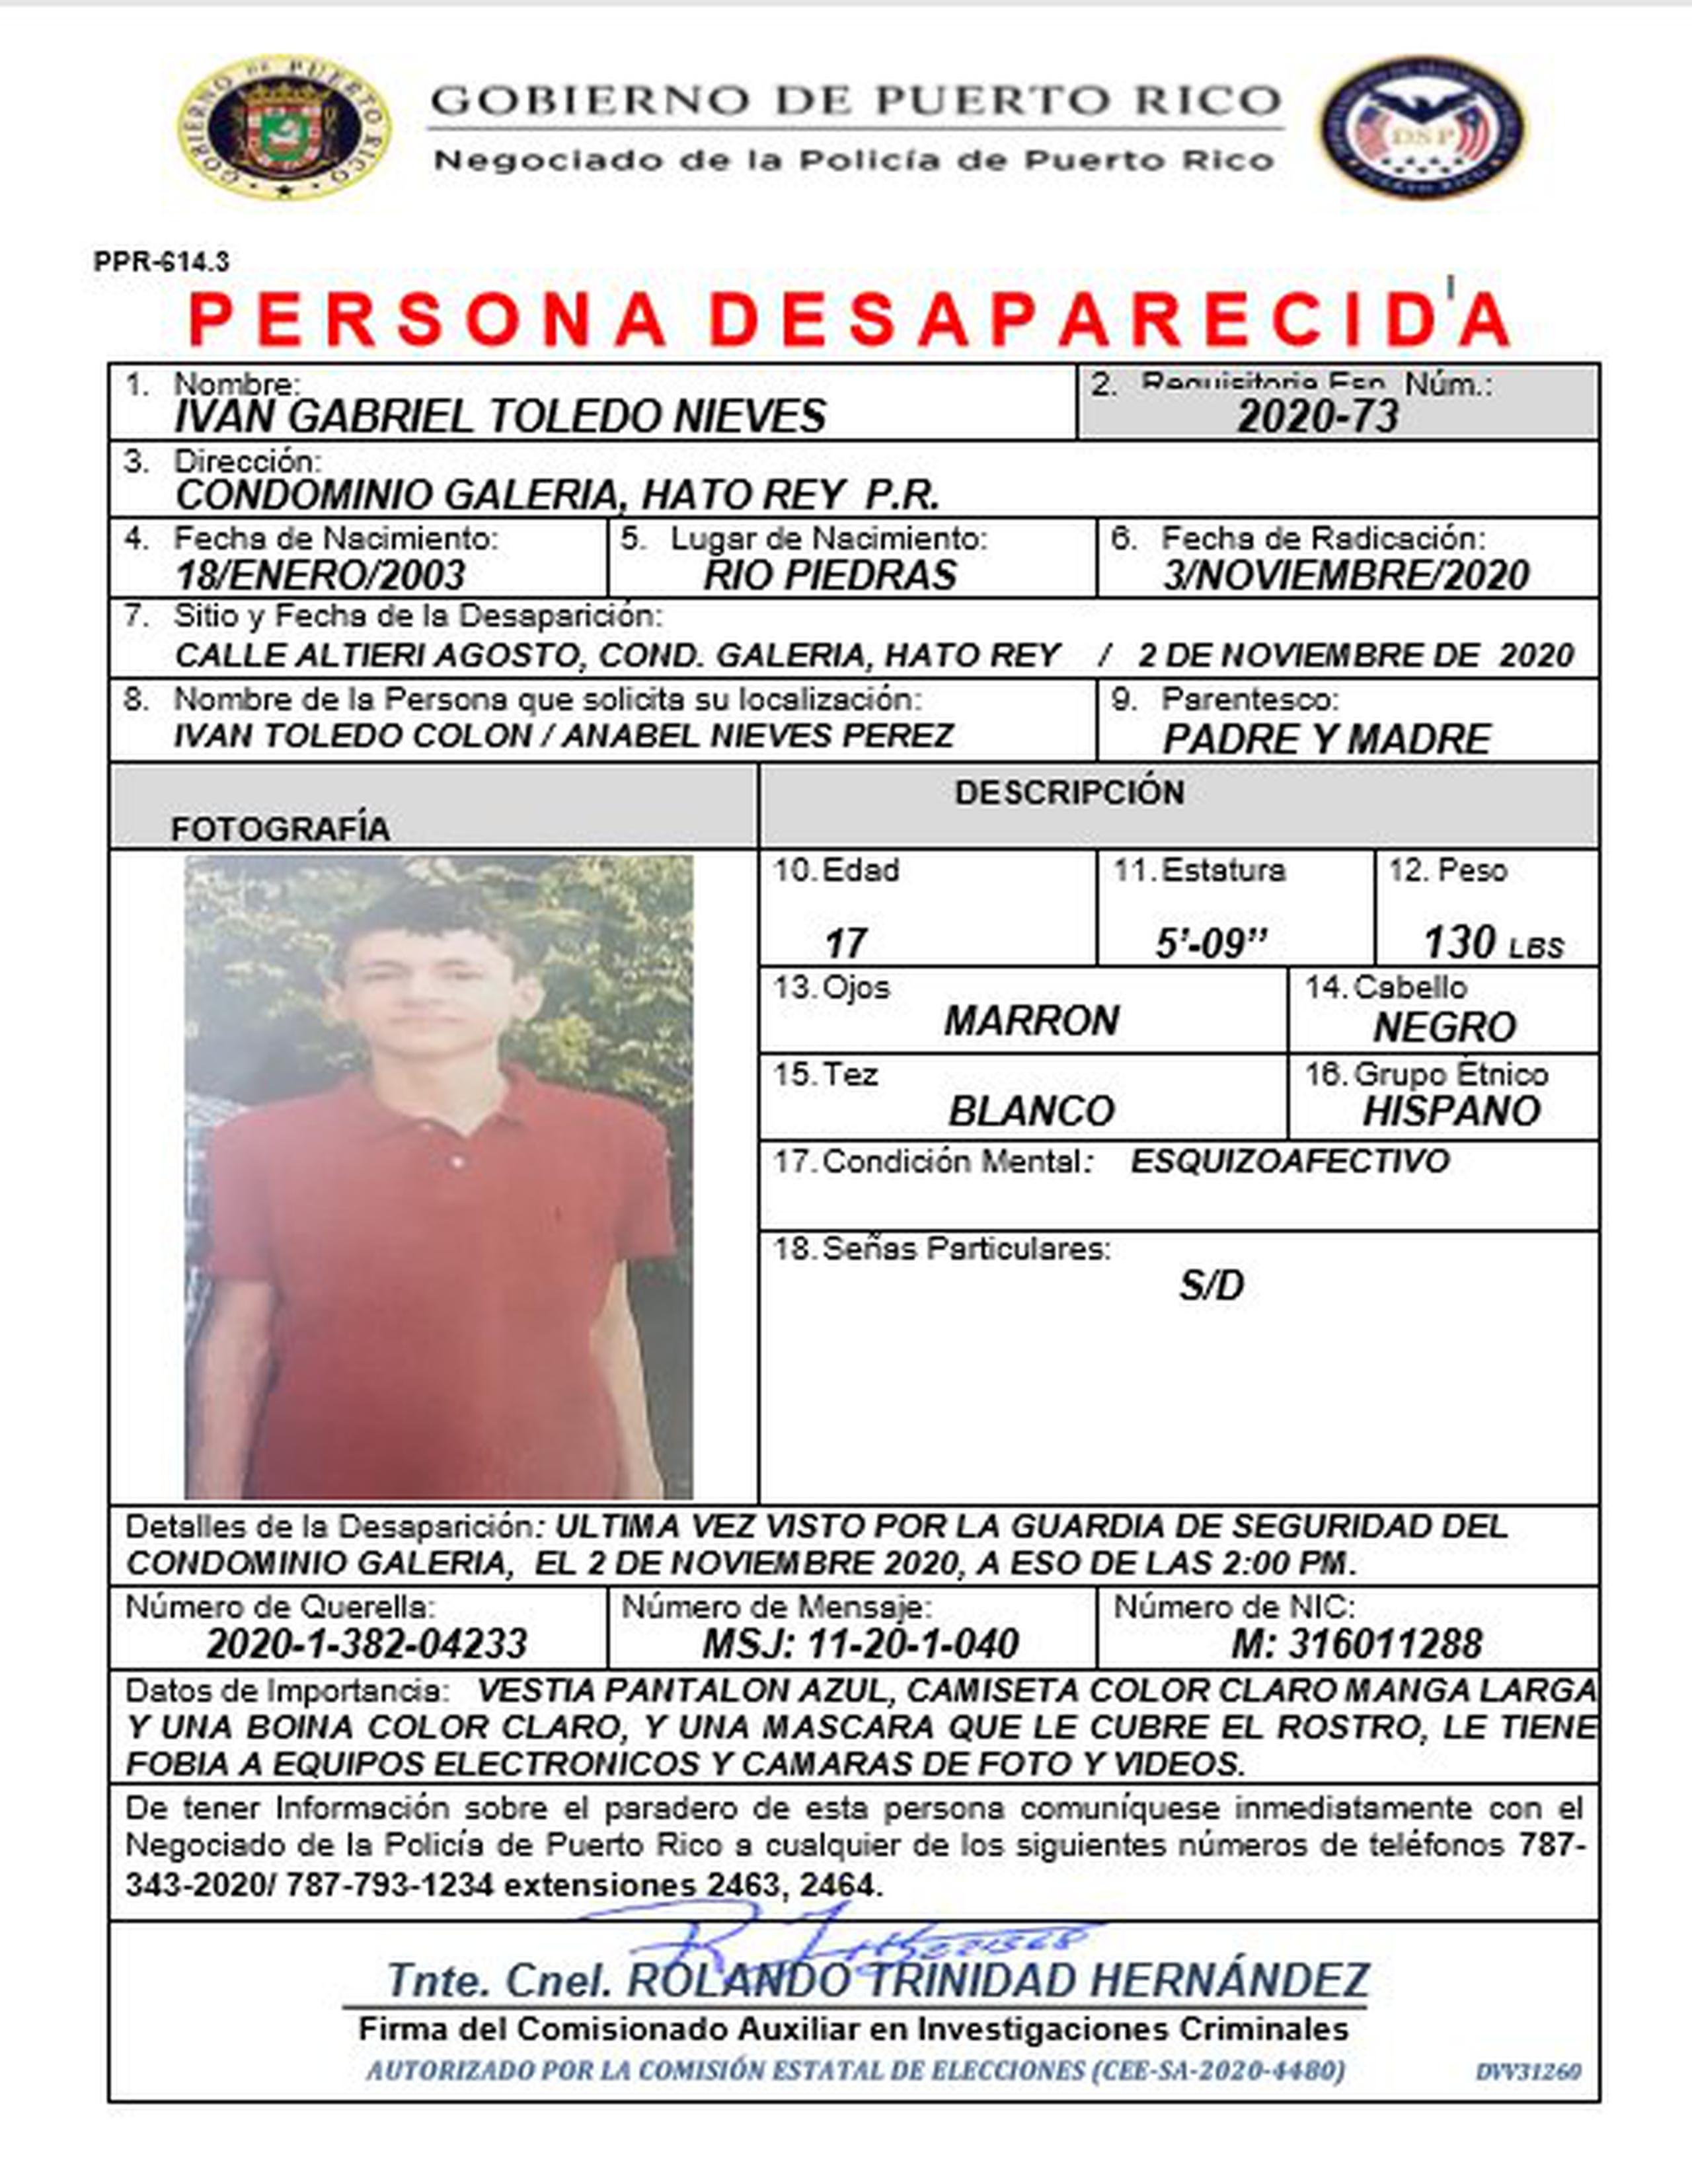 Las autoridades buscan a un adolescente identificado como Iván Gabriel Toledo Nieves de 17 años quien fue visto por última vez ayer, lunes, por un guardia de seguridad del condominio Galería, en Hato Rey. Para confidencias llame al (787) 793-1234 extensión 2200 o al 343-2020.